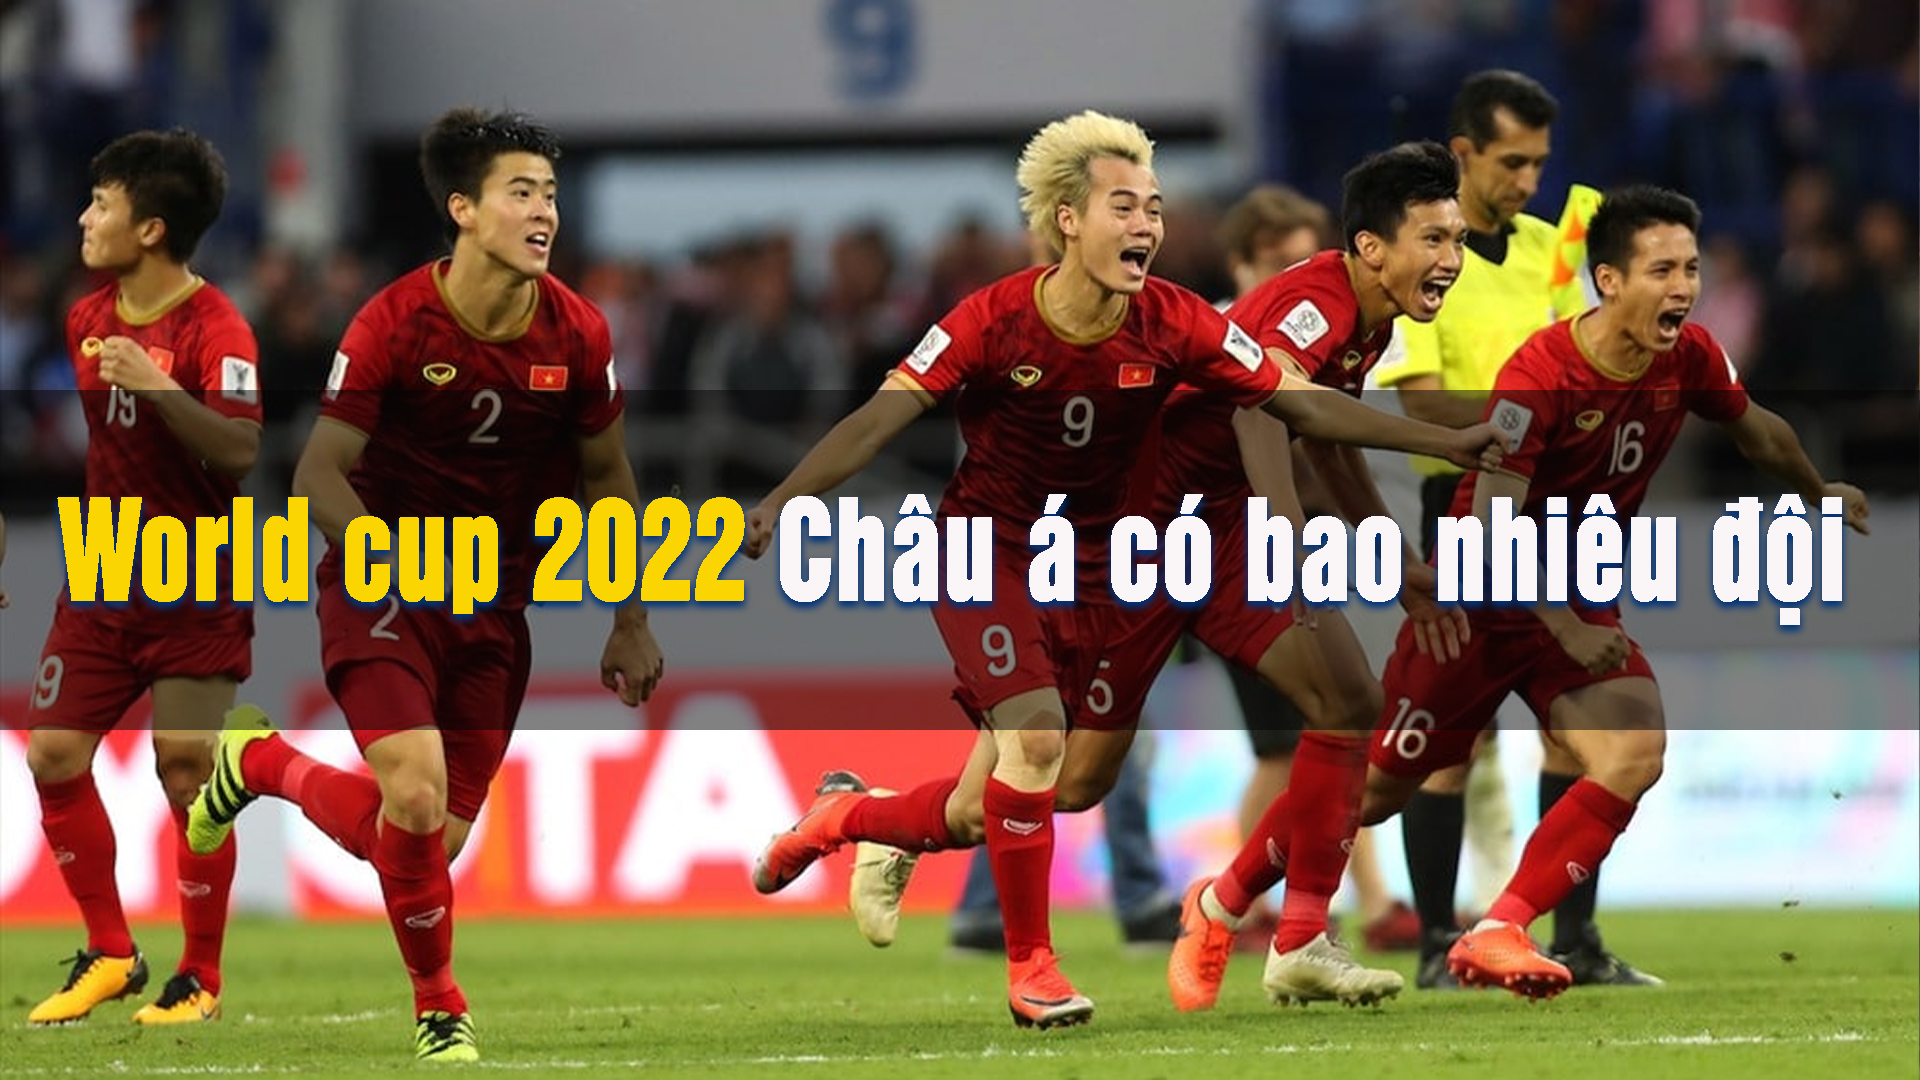 world cup 2022 châu á có bao nhiêu đội